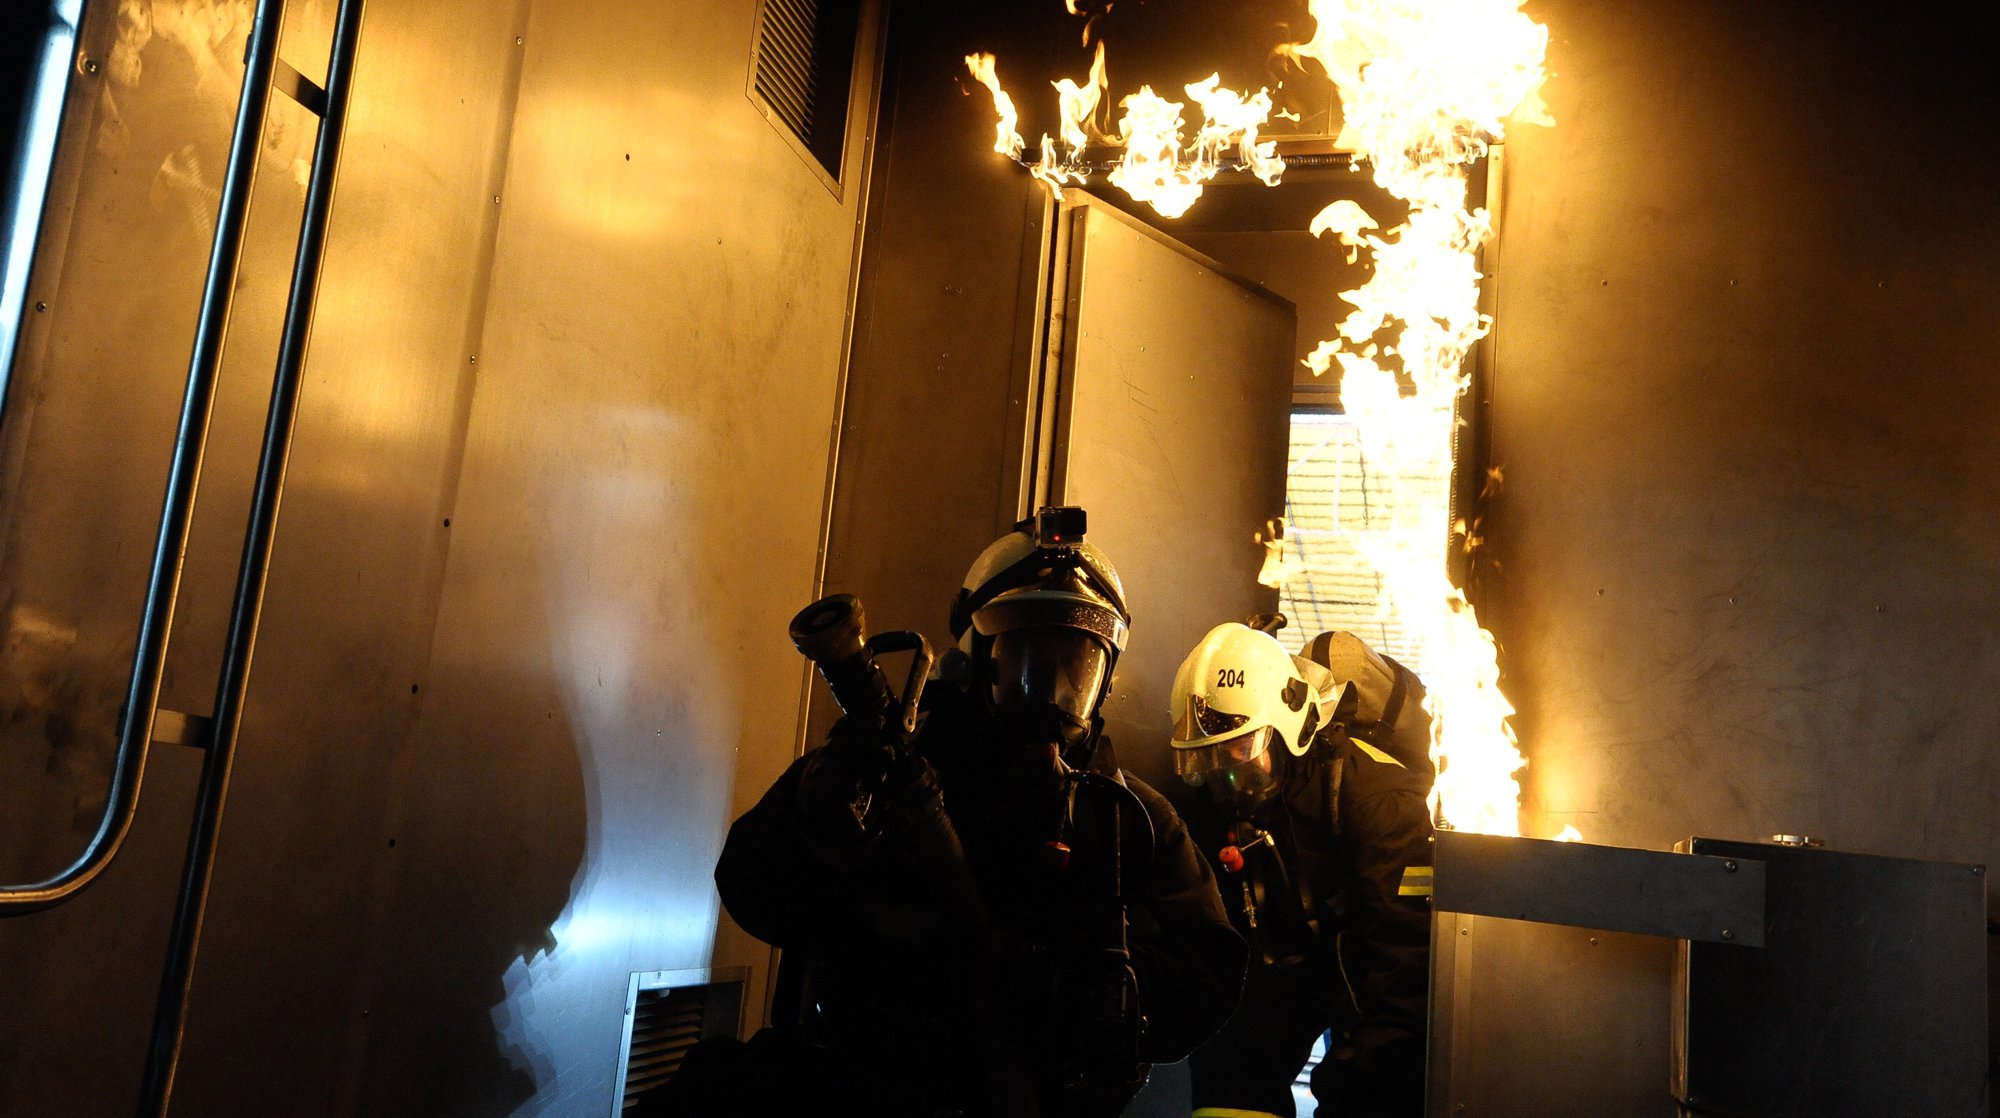 Dailystorm - Пожар возник на объекте рядом со штаб-квартирой Службы внешней разведки